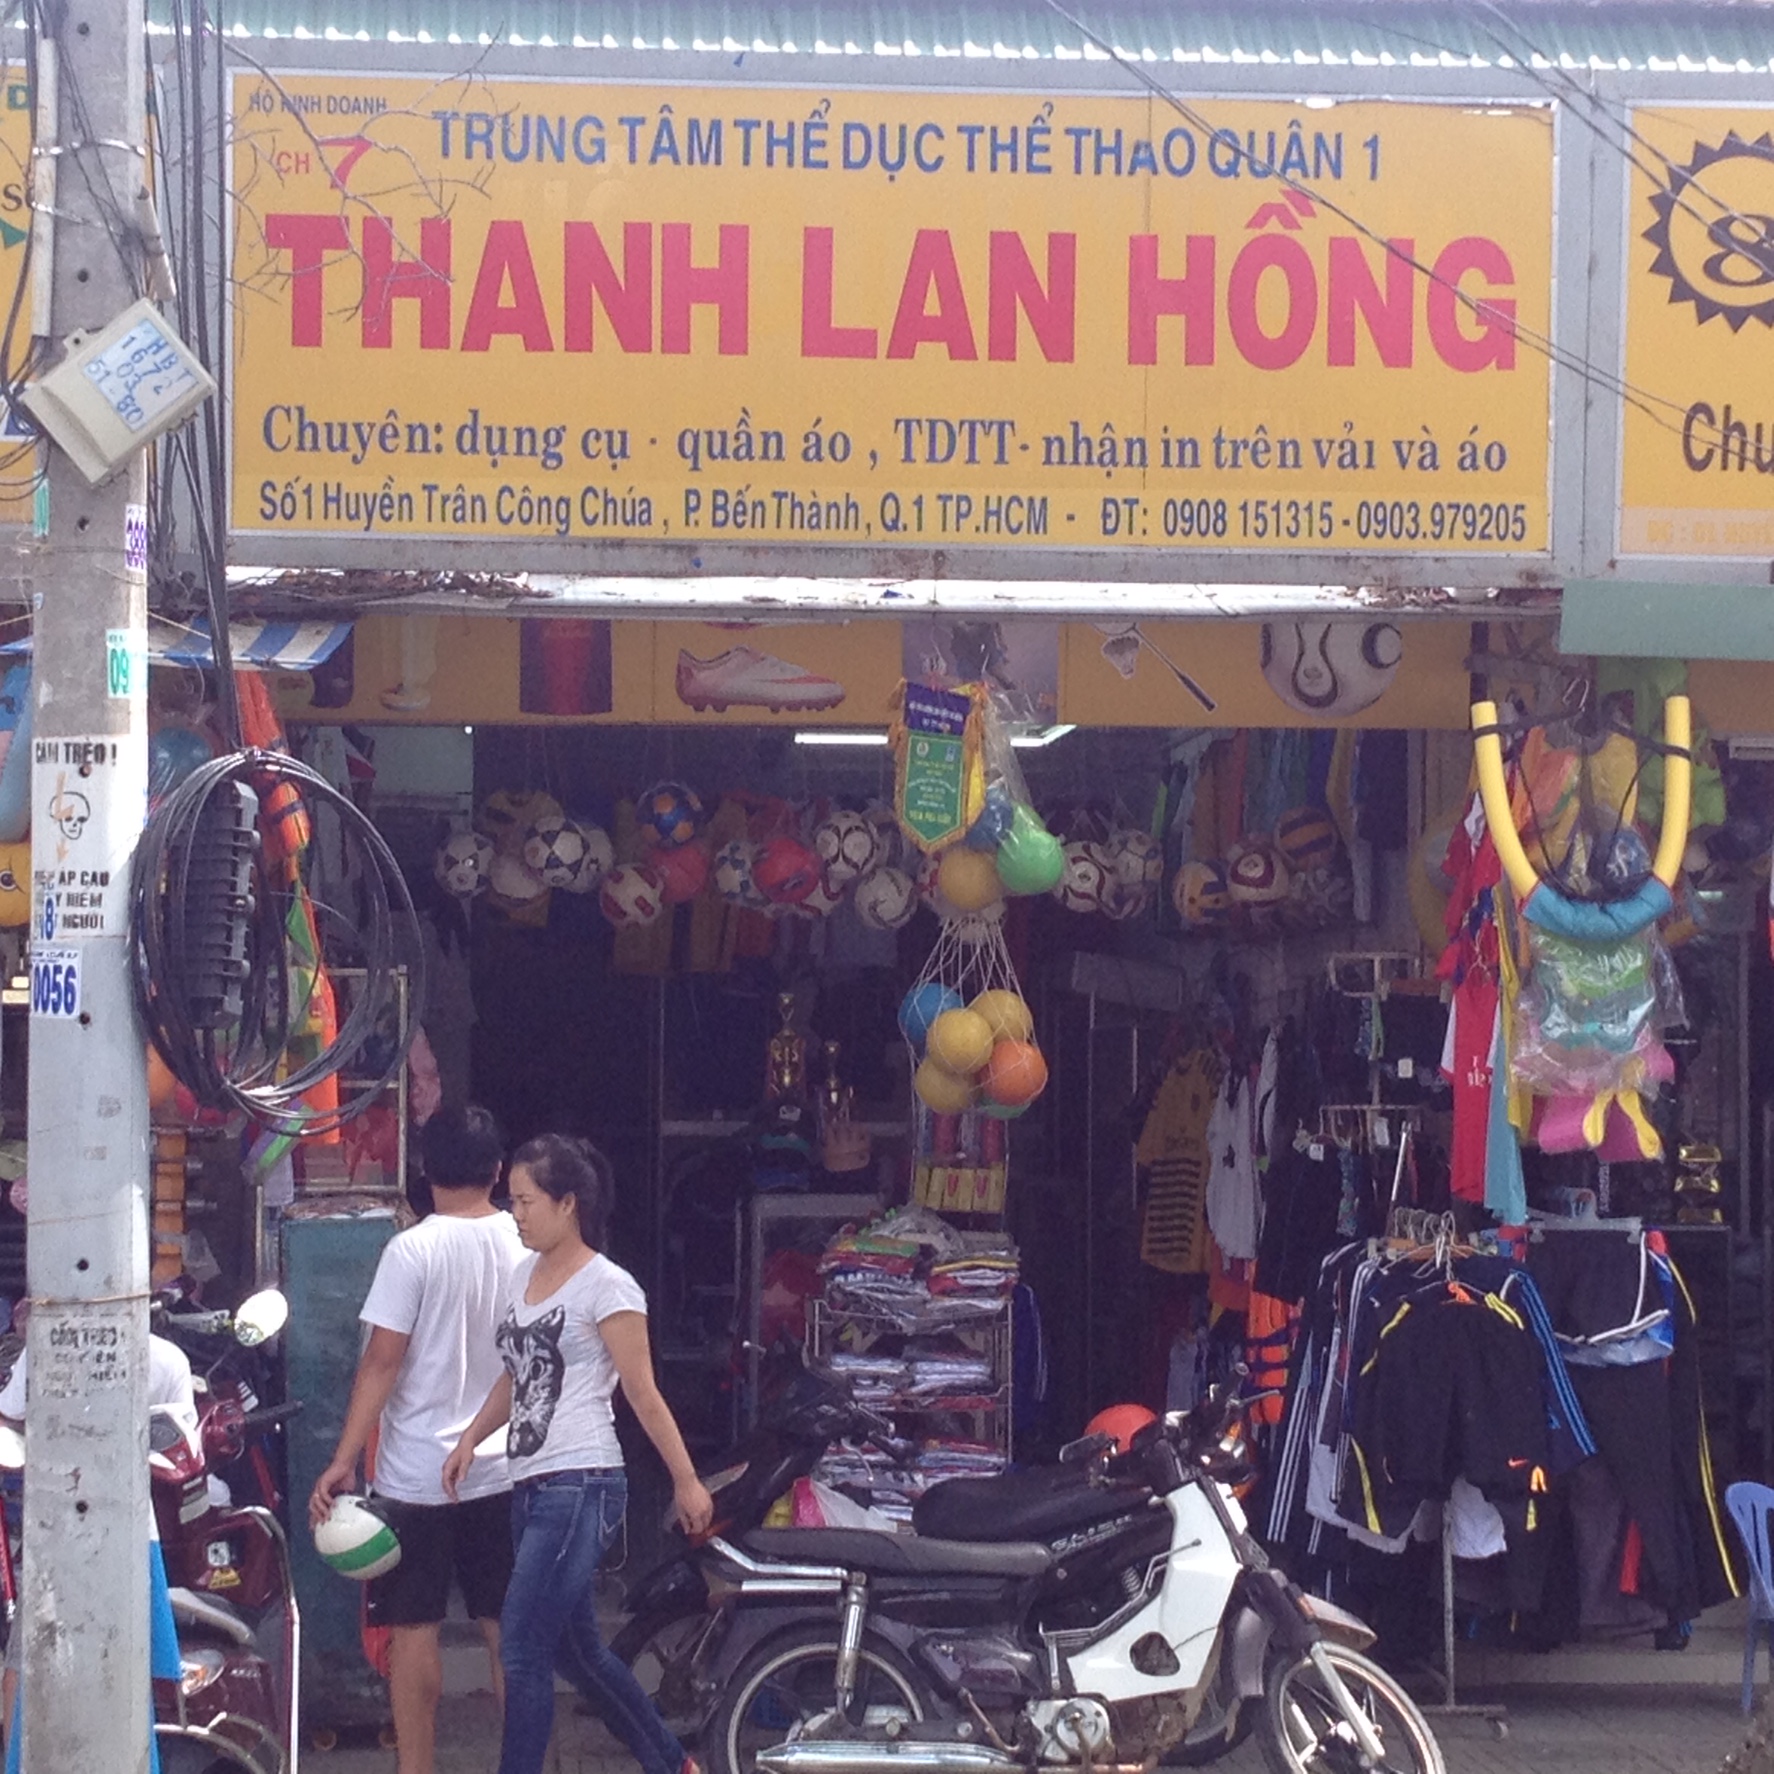 Hồng Thanh Lan- Cửa hàng quần áo, phụ kiện thể thao, Quận 1